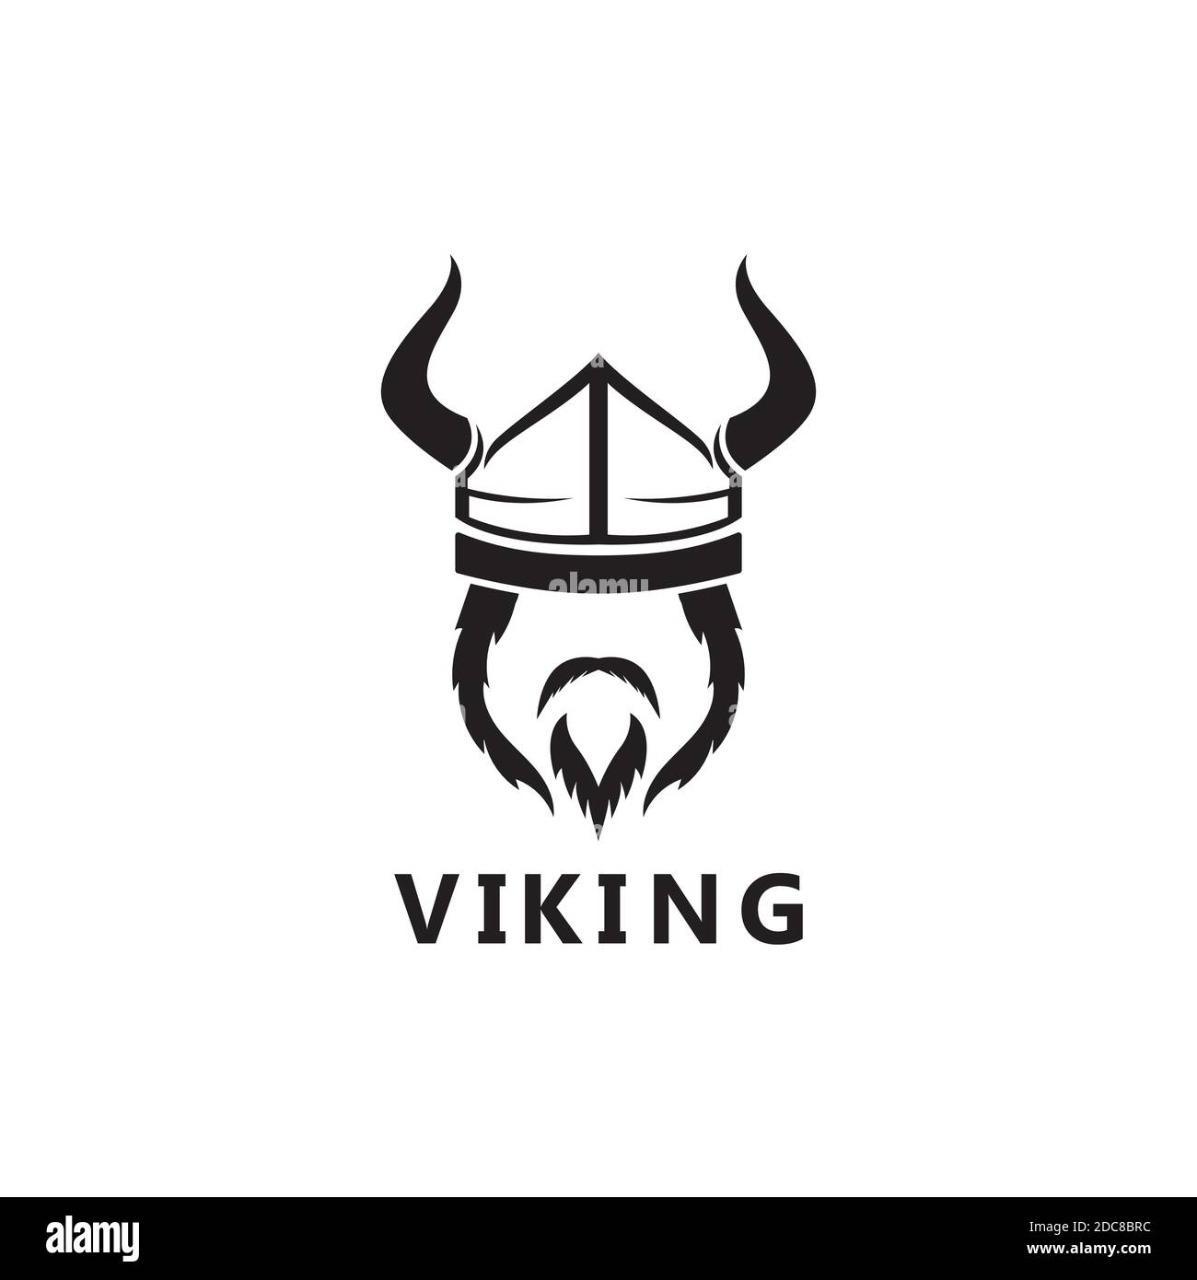 Vikingo95?s=hucztg6wwn+wvt3+3umm2hsvunvfckvkcnikv644ml8=